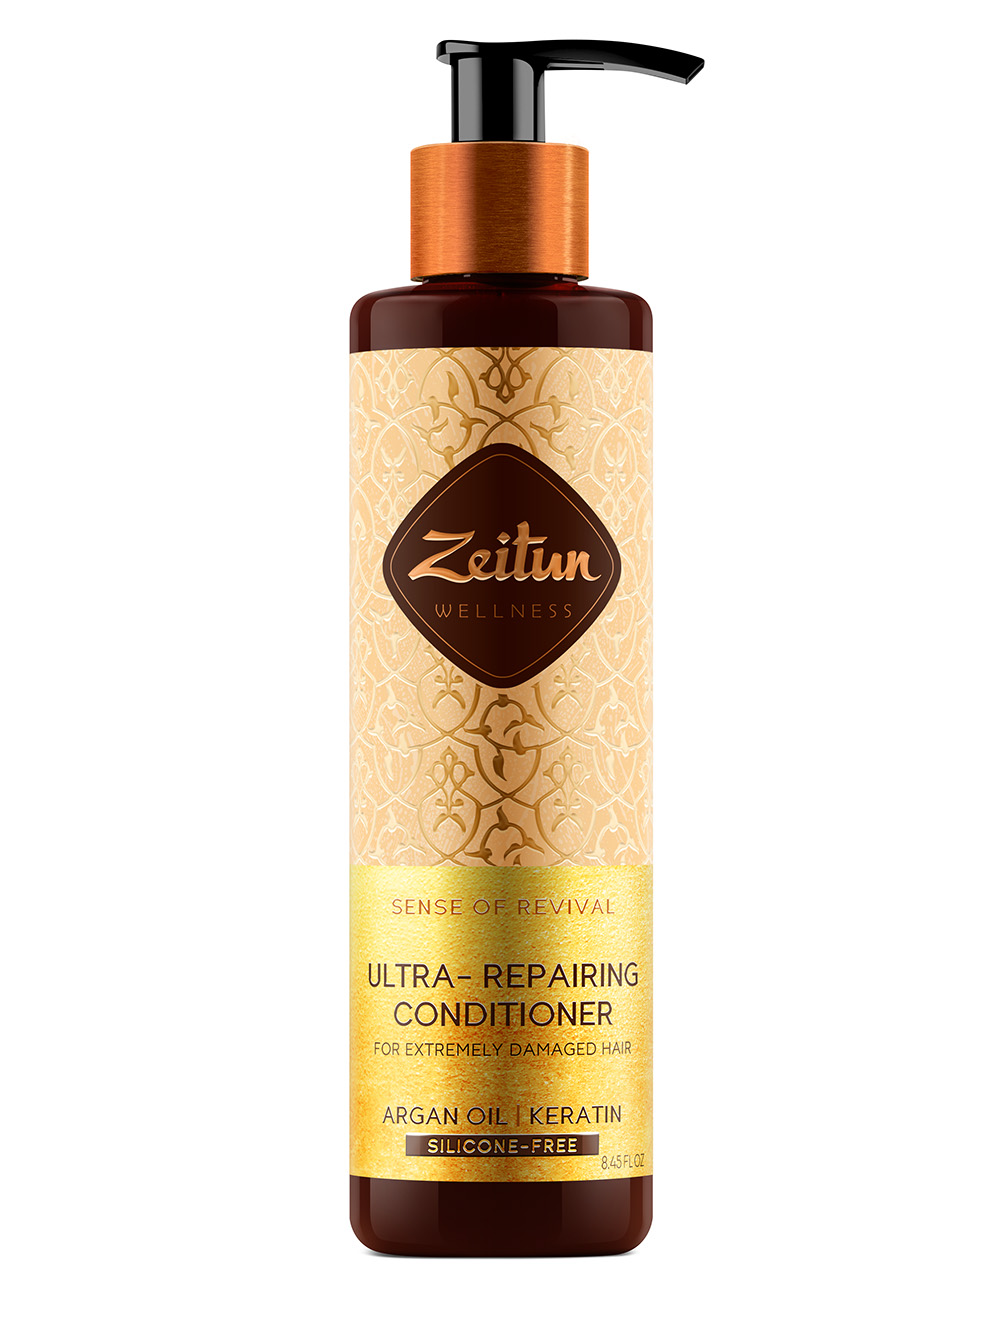 Zeitun Бальзам-кондиционер для поврежденных волос Ритуал восстановления, 250 мл (Zeitun, Wellness) zeitun спрей кондиционер ритуал